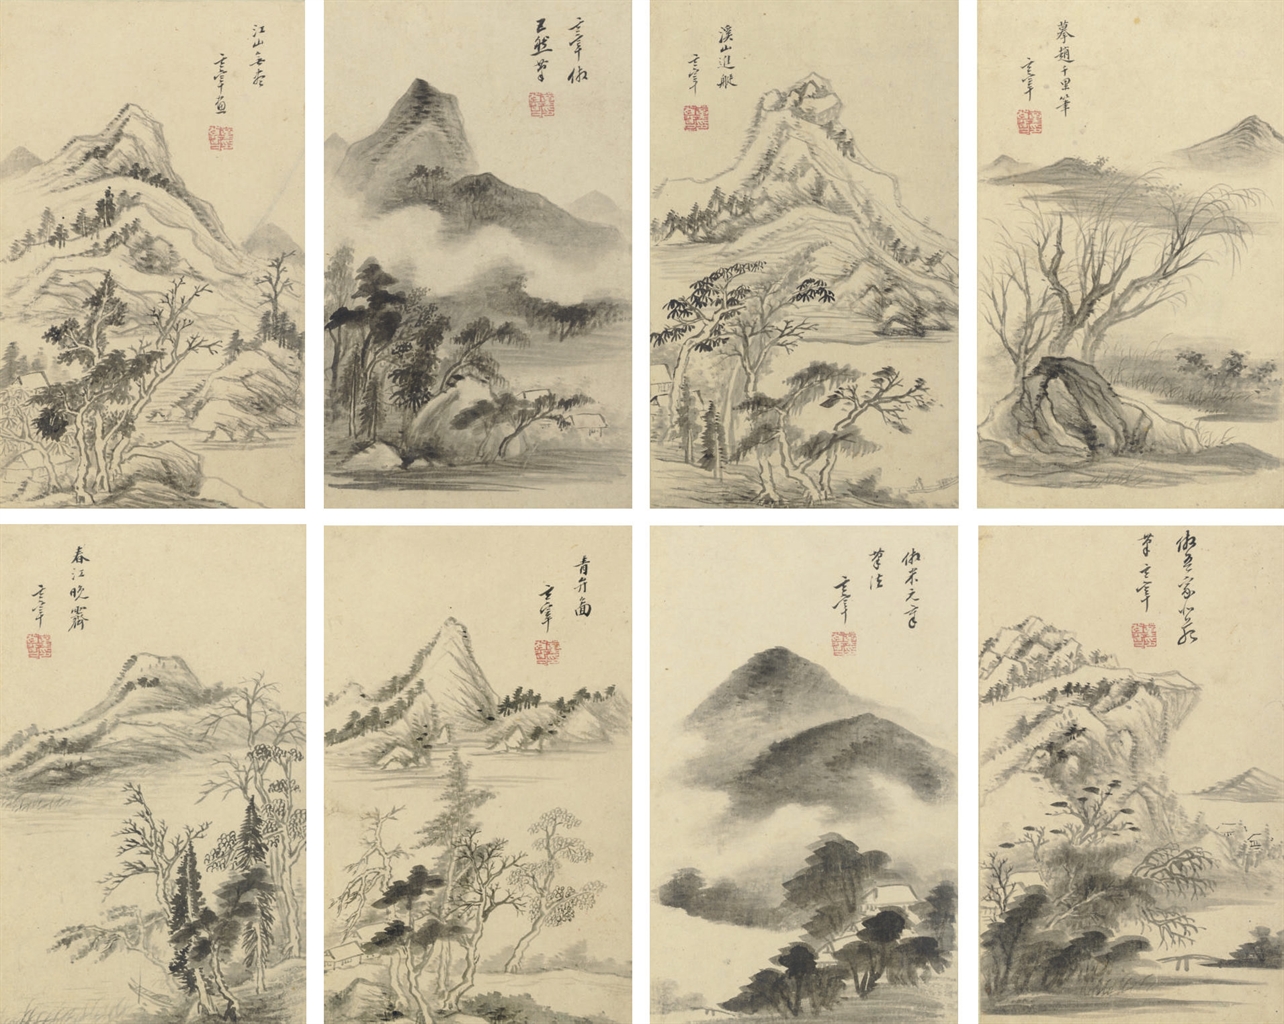 董其昌 landscapes album of eight leaves